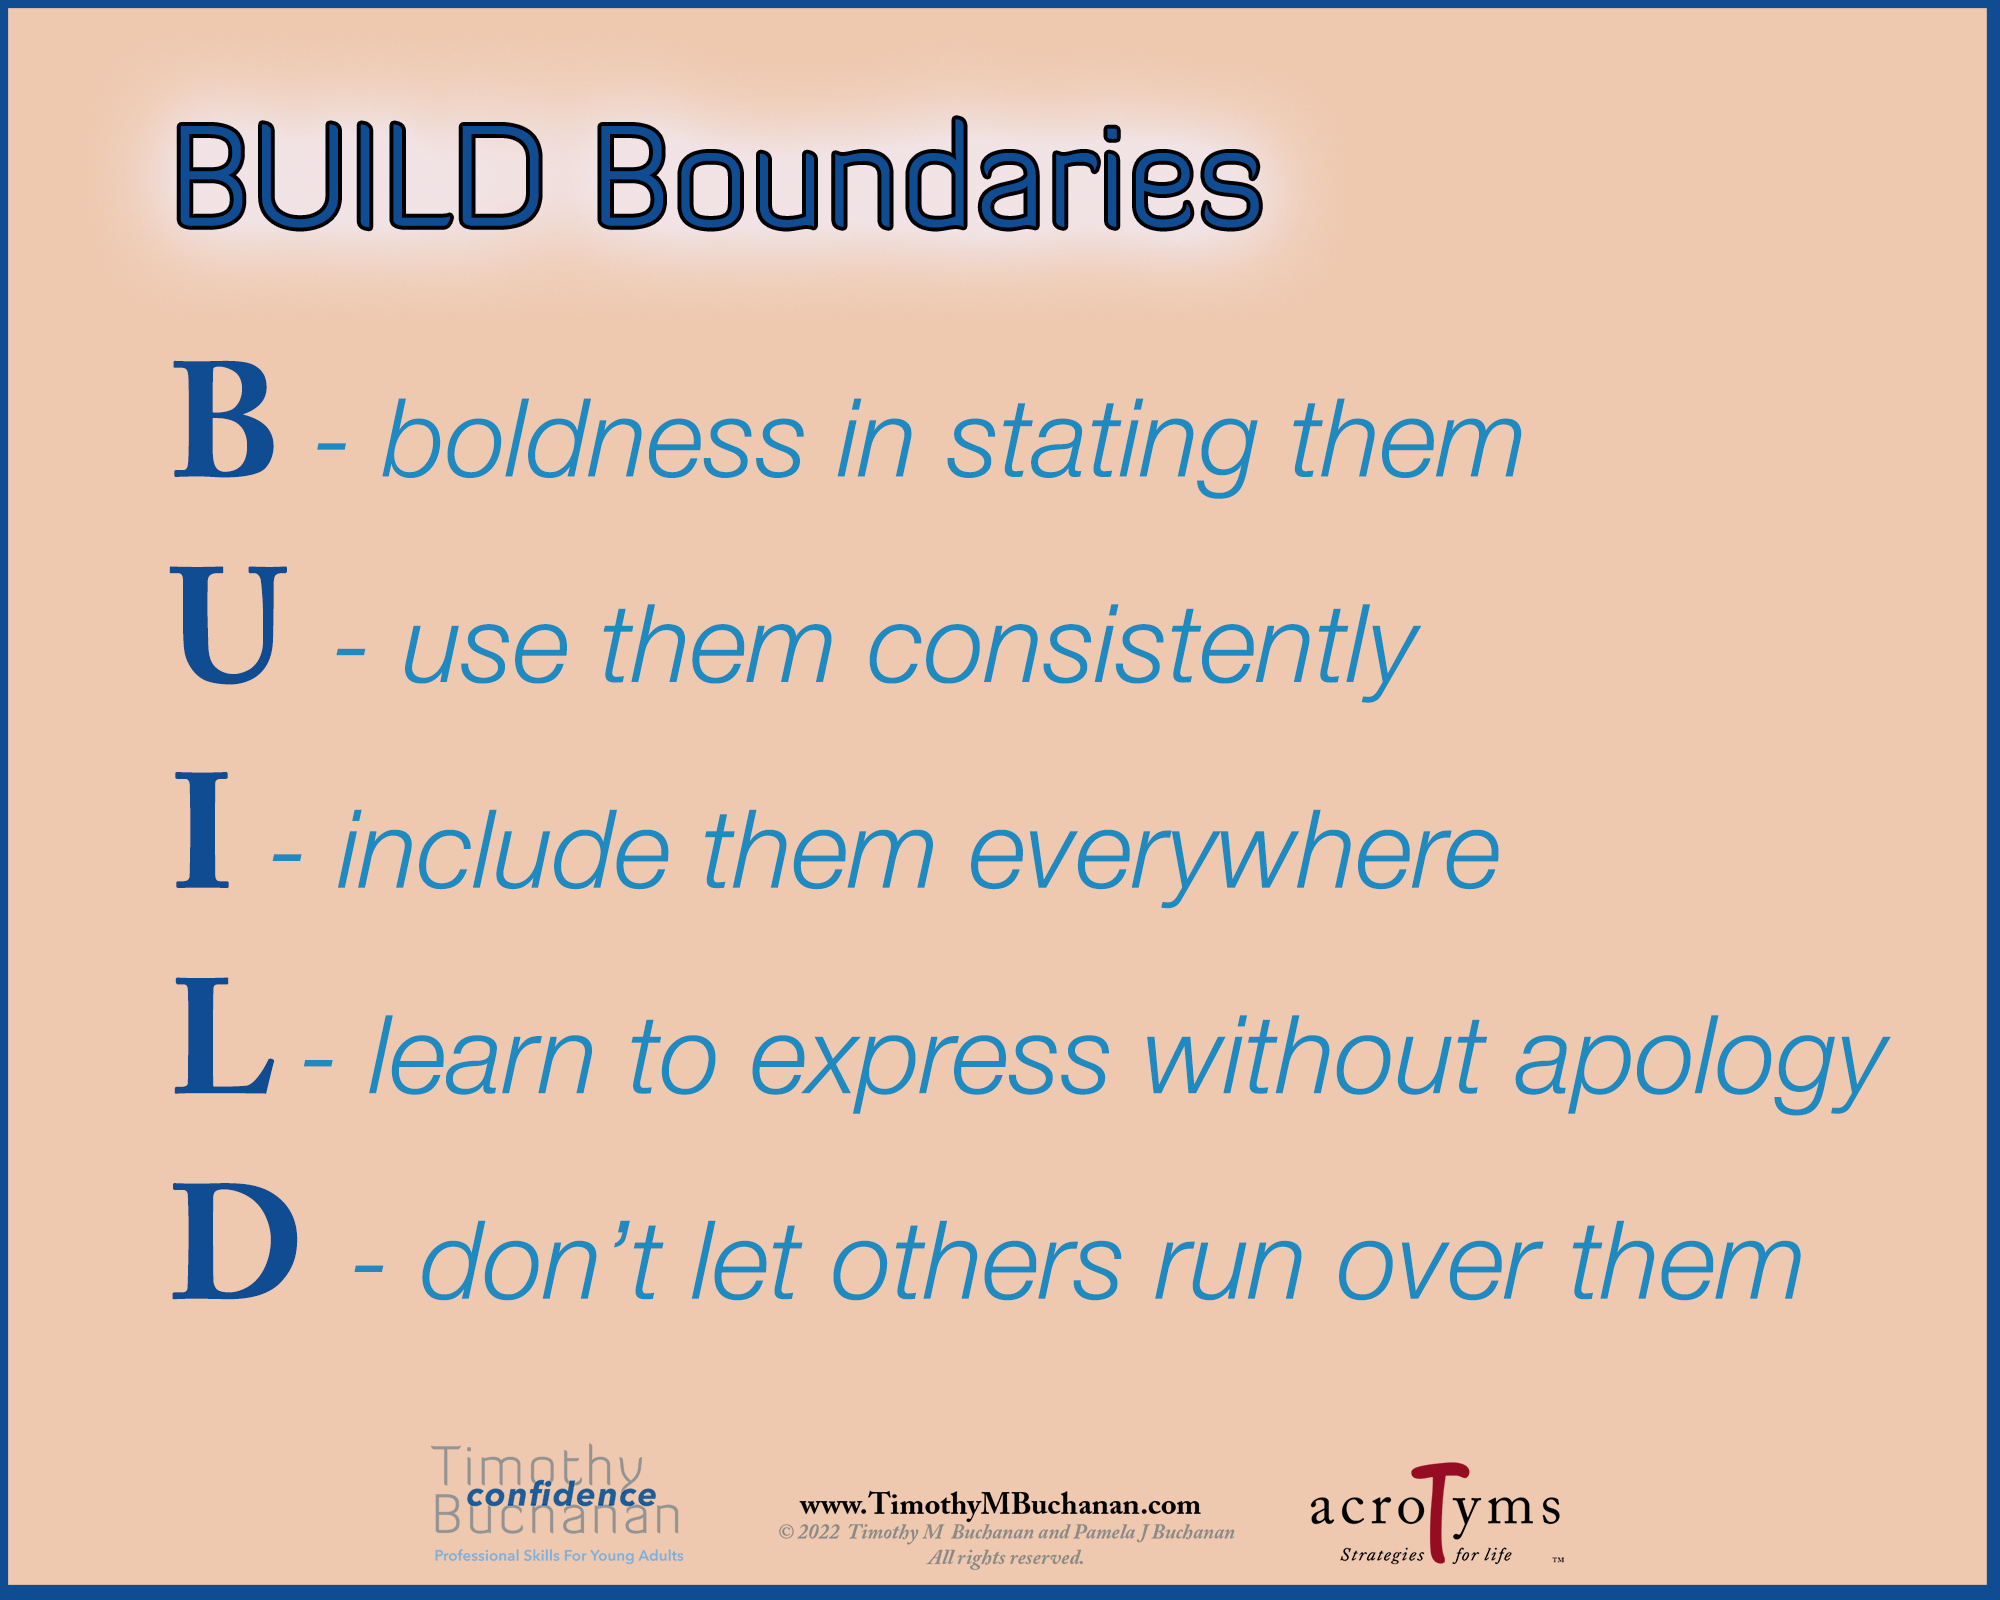 BUILD Boundaries Posters